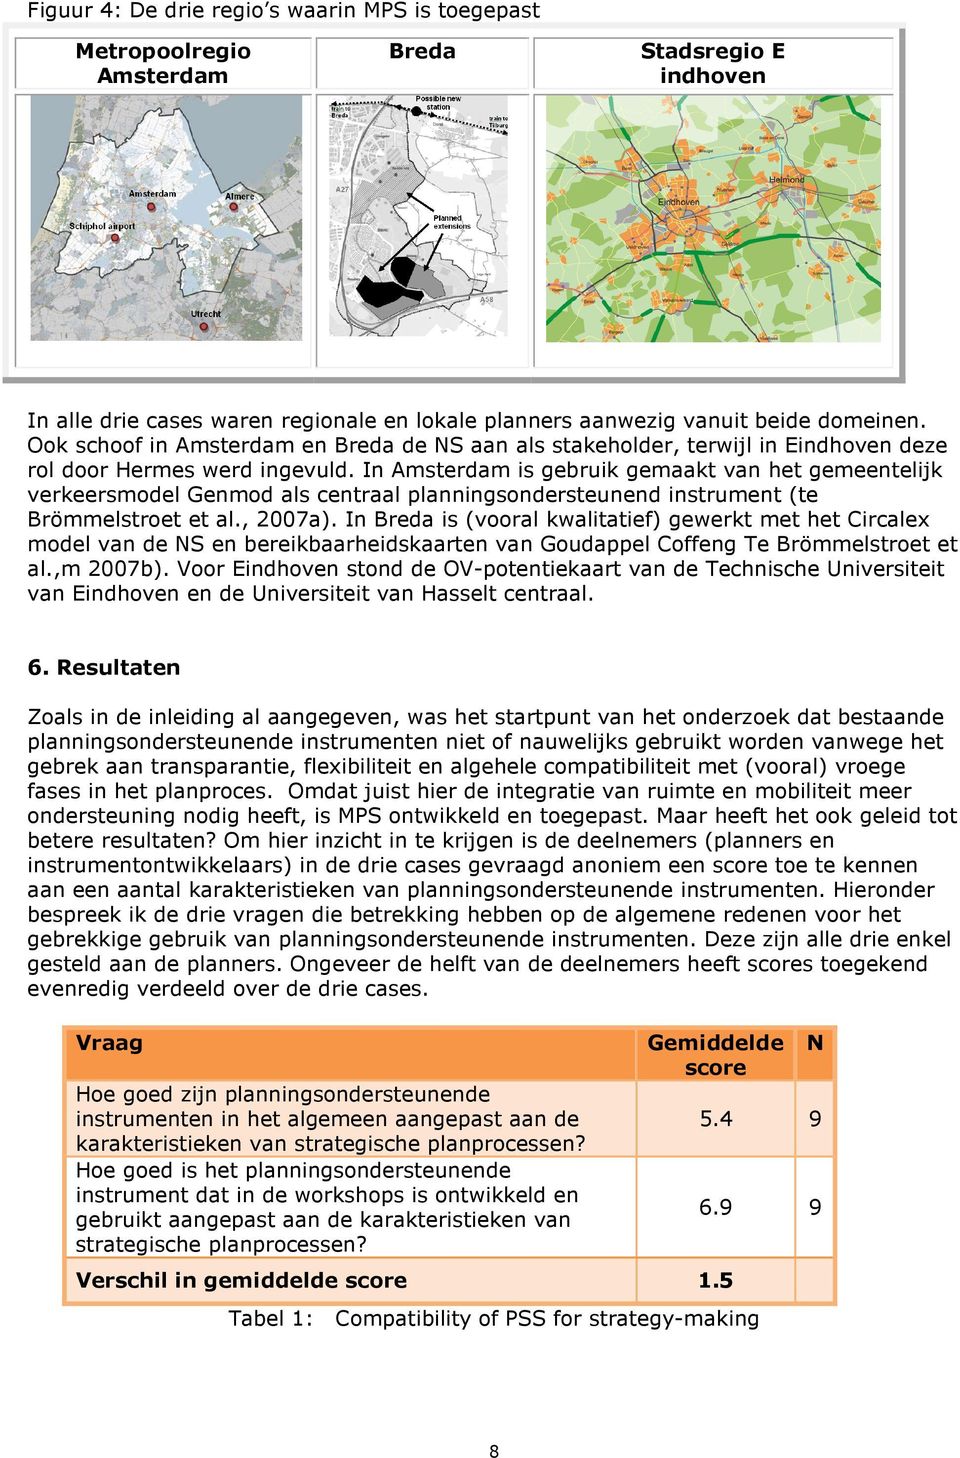 In Amsterdam is gebruik gemaakt van het gemeentelijk verkeersmodel Genmod als centraal planningsondersteunend instrument (te Brömmelstroet et al., 2007a).